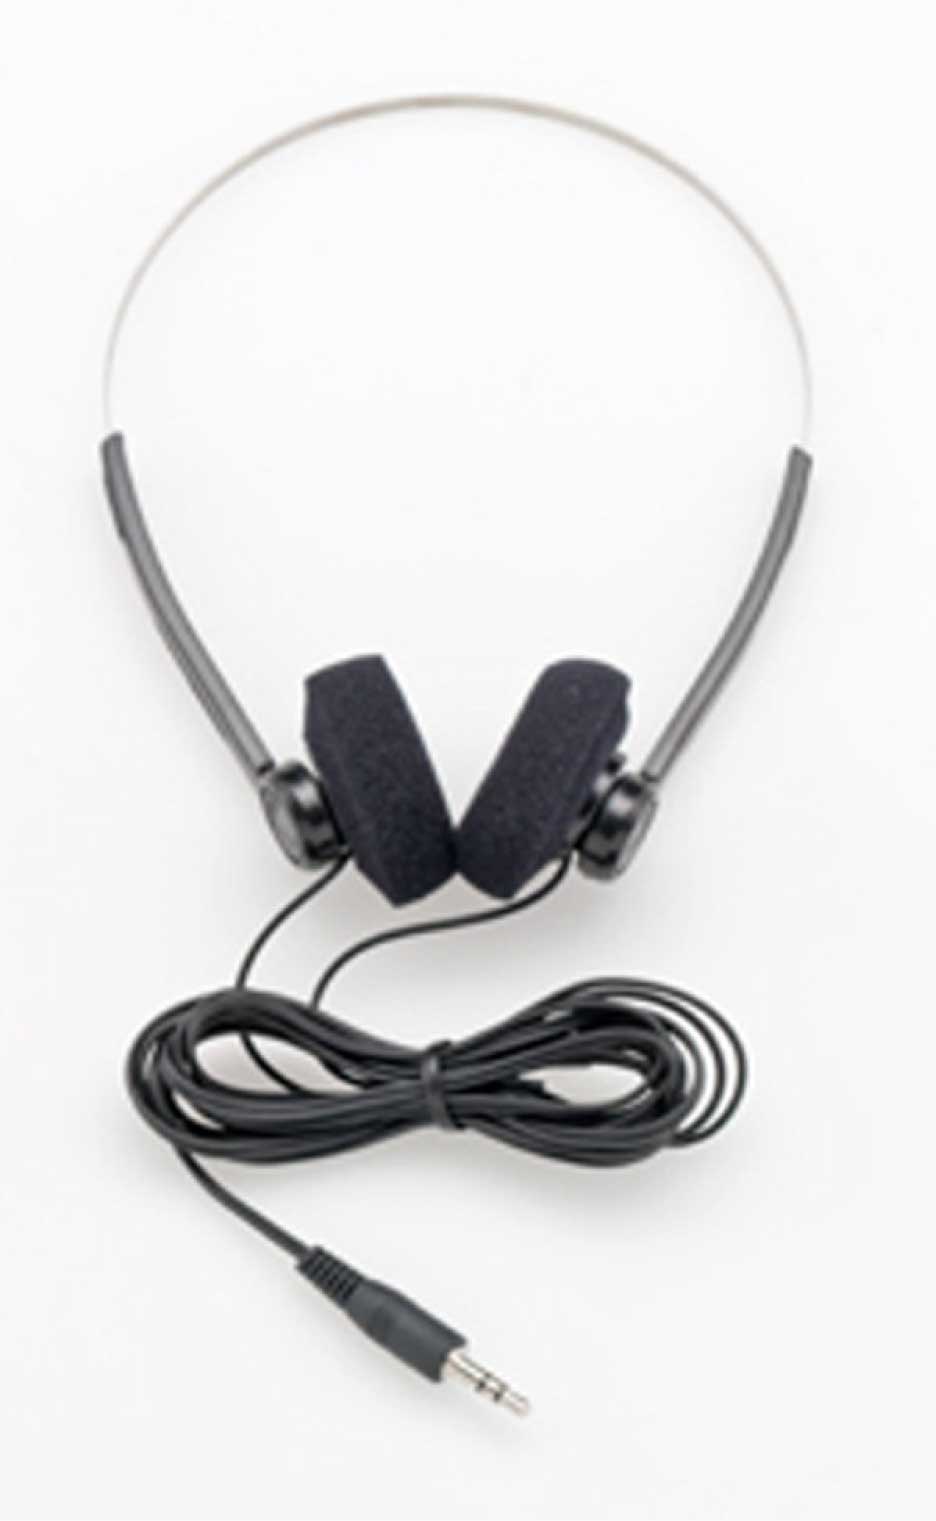 Bügelkopfhörer mit langem Kabel und austauschbaren Ohrpolstern